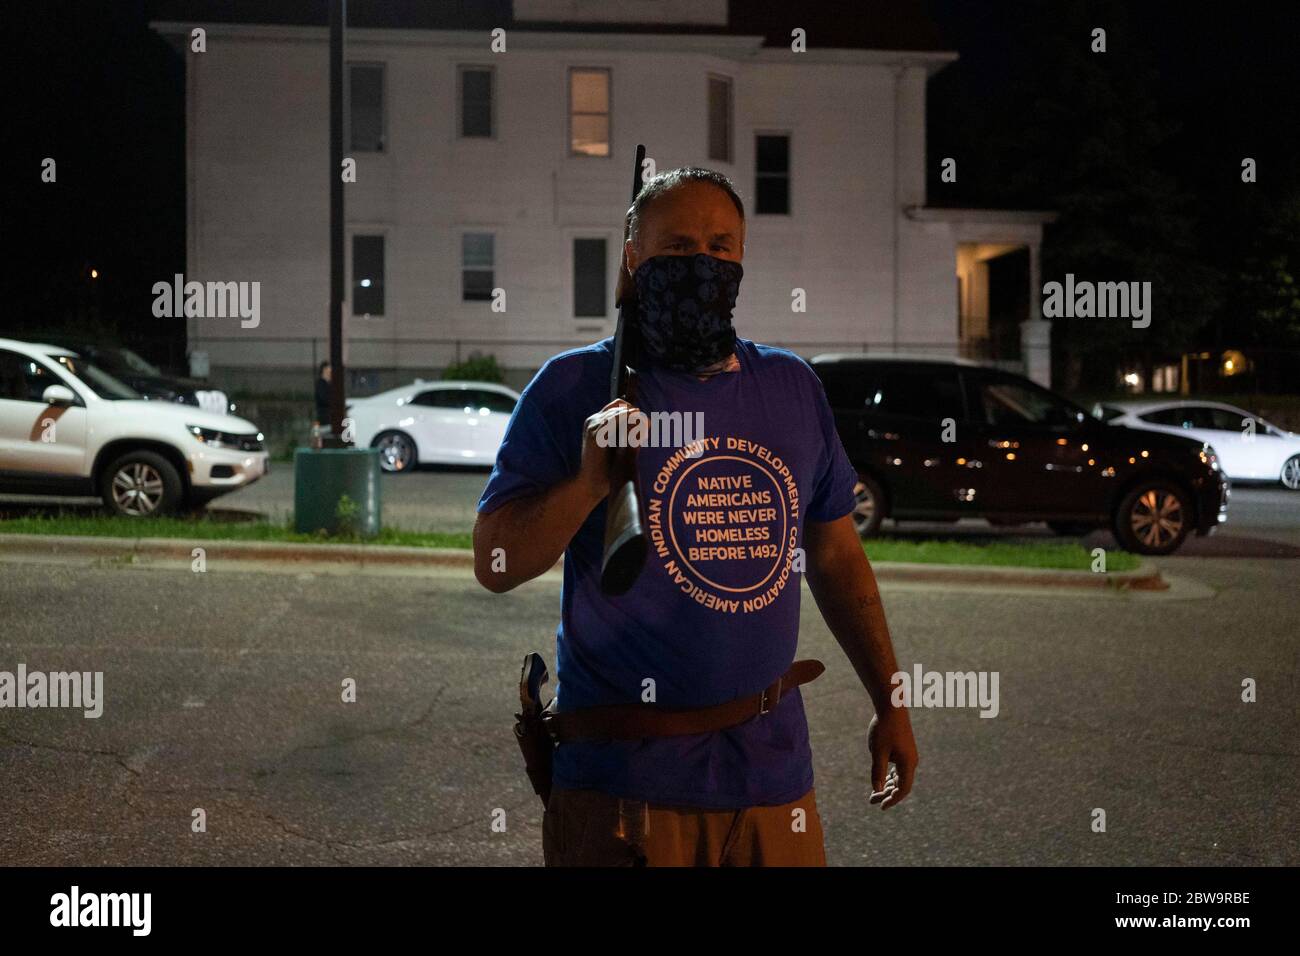 Minneapolis, Minnesota, EE.UU. 30 de mayo de 2020. Un nativo americano, sosteniendo un rifle y llevando una pistola, protege su vecindario durante las protestas de George Floyd el sábado, 30 de mayo de 2020, en Minneapolis, Minnesota. Crédito: SAIT Serkan Gurbuz/ZUMA Wire/Alamy Live News Foto de stock